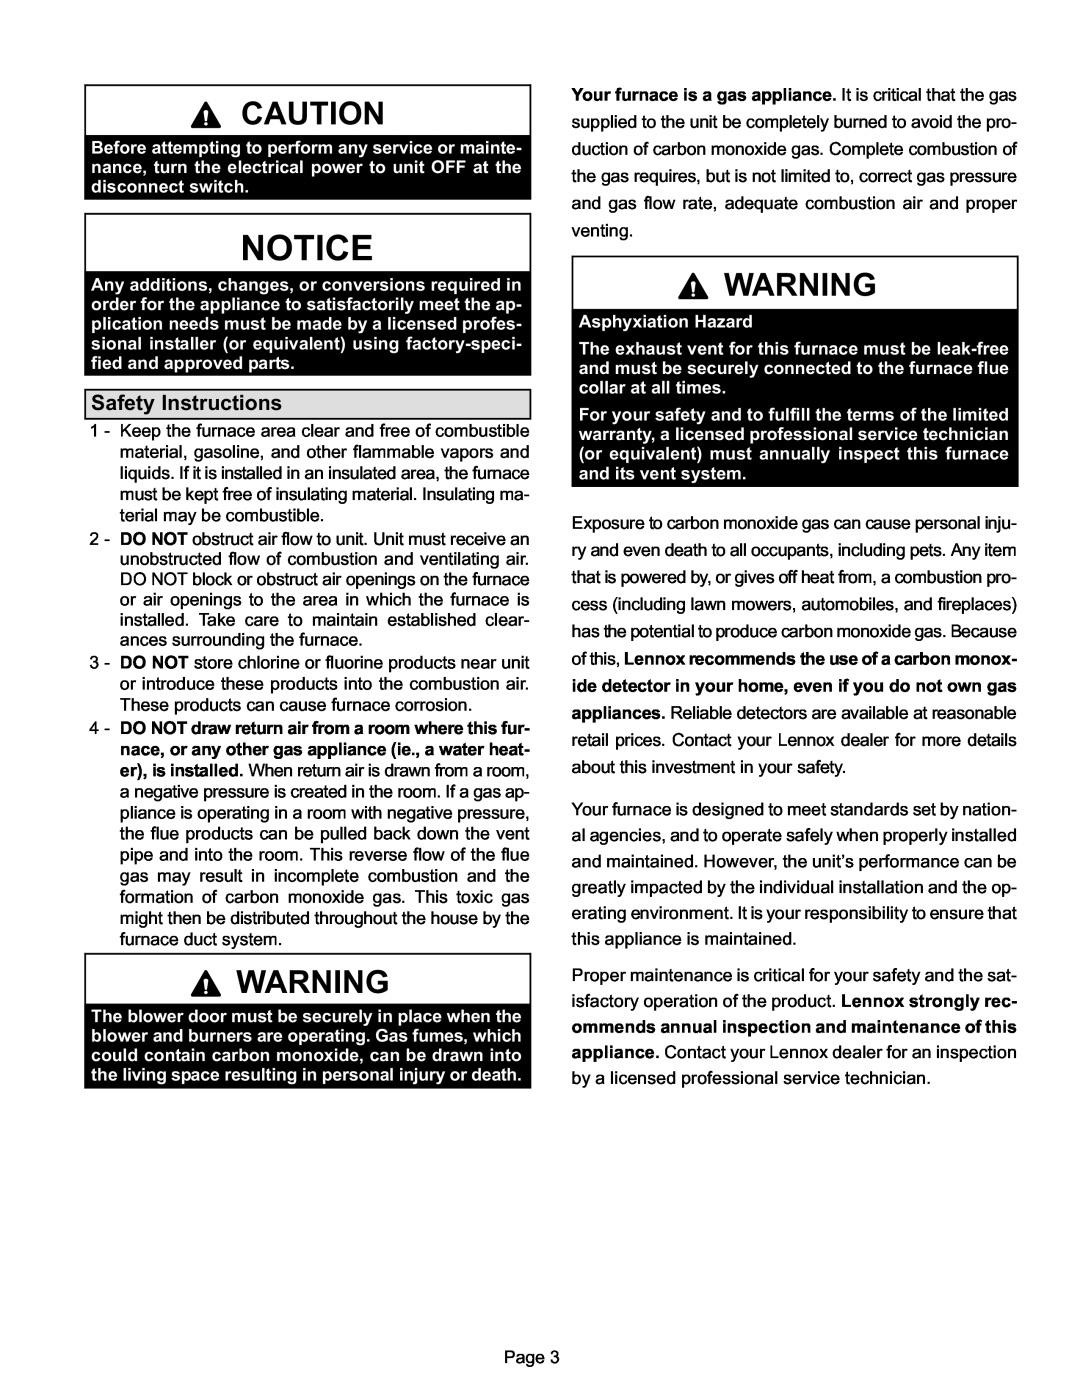 Lennox International Inc Lennox Gas Furnace, EL280DF manual Safety Instructions 